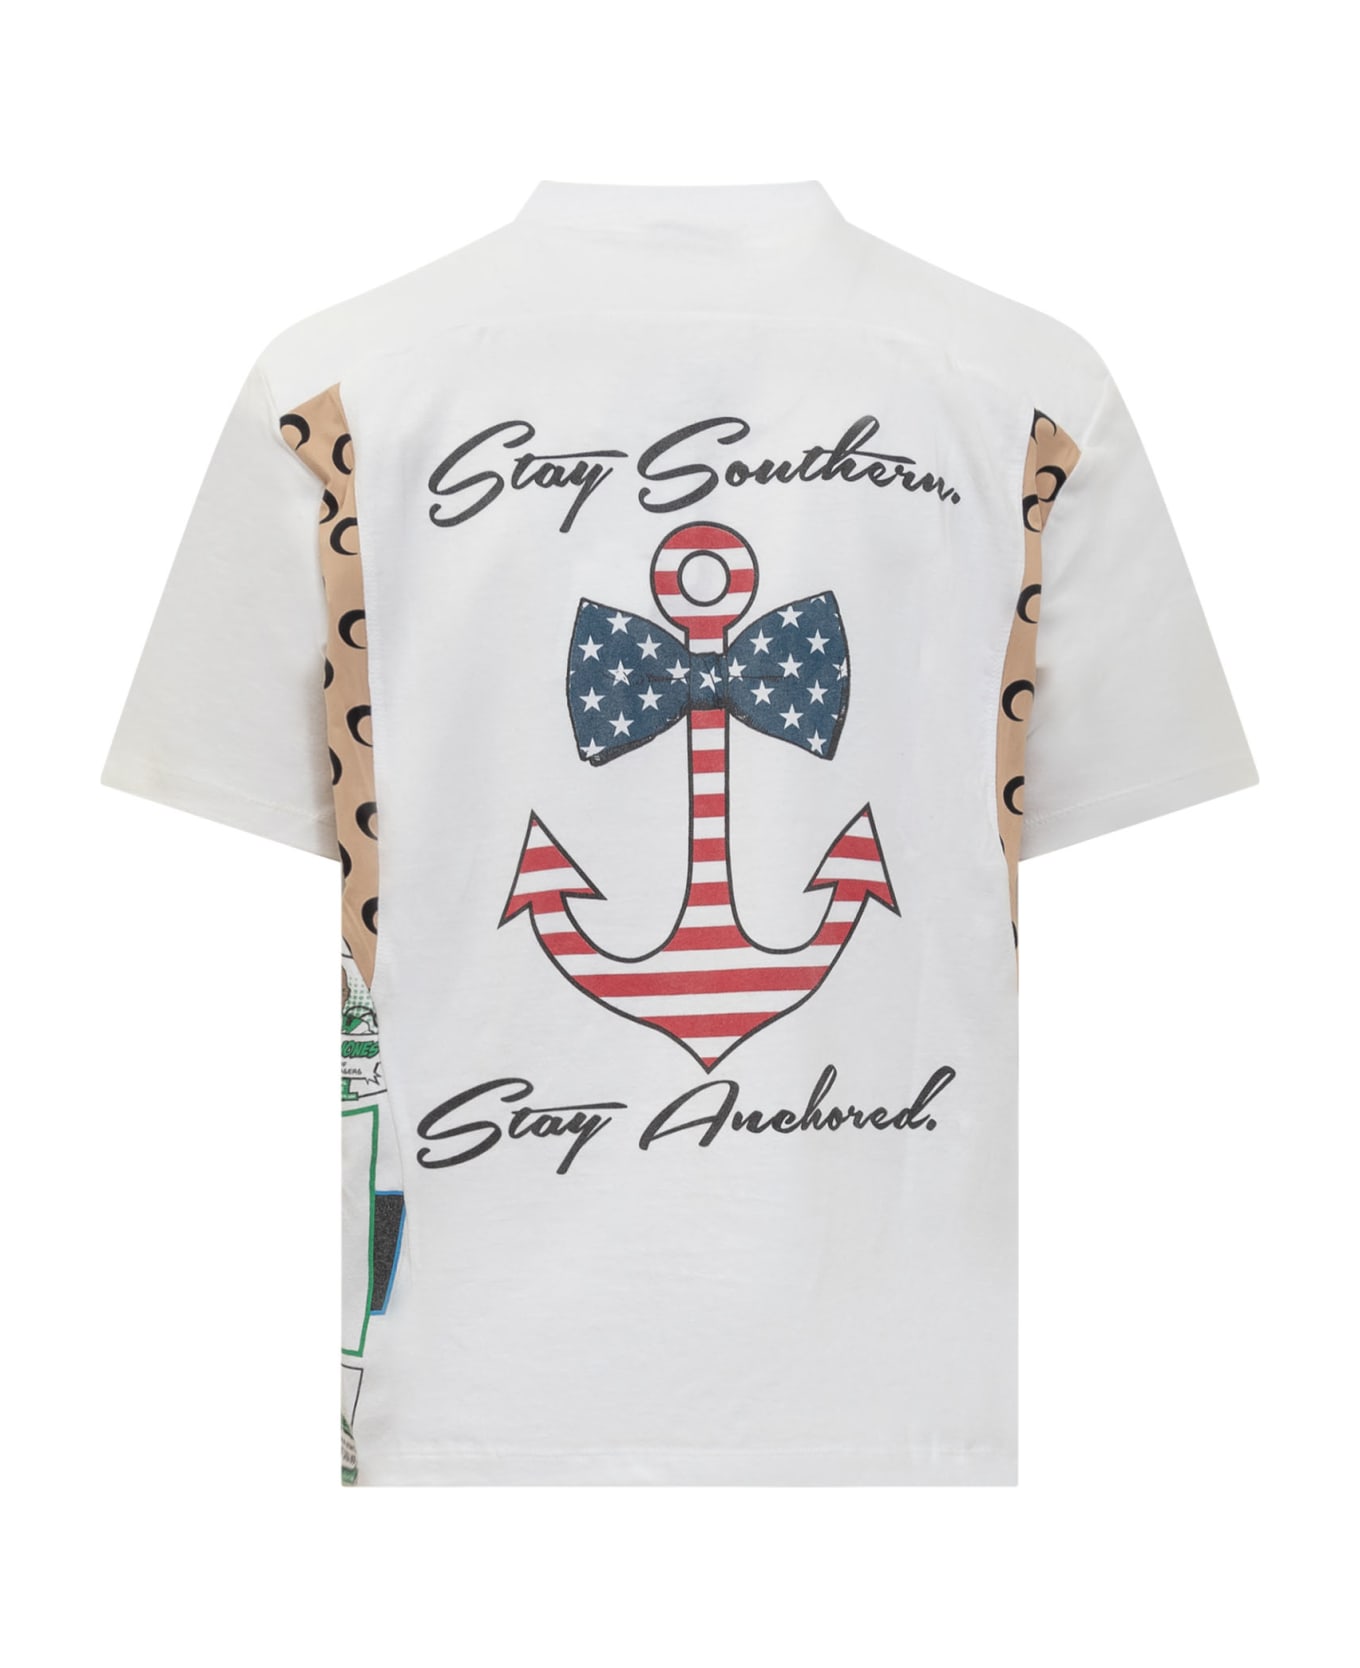 Marine Serre Graphic T-shirt - WHITE